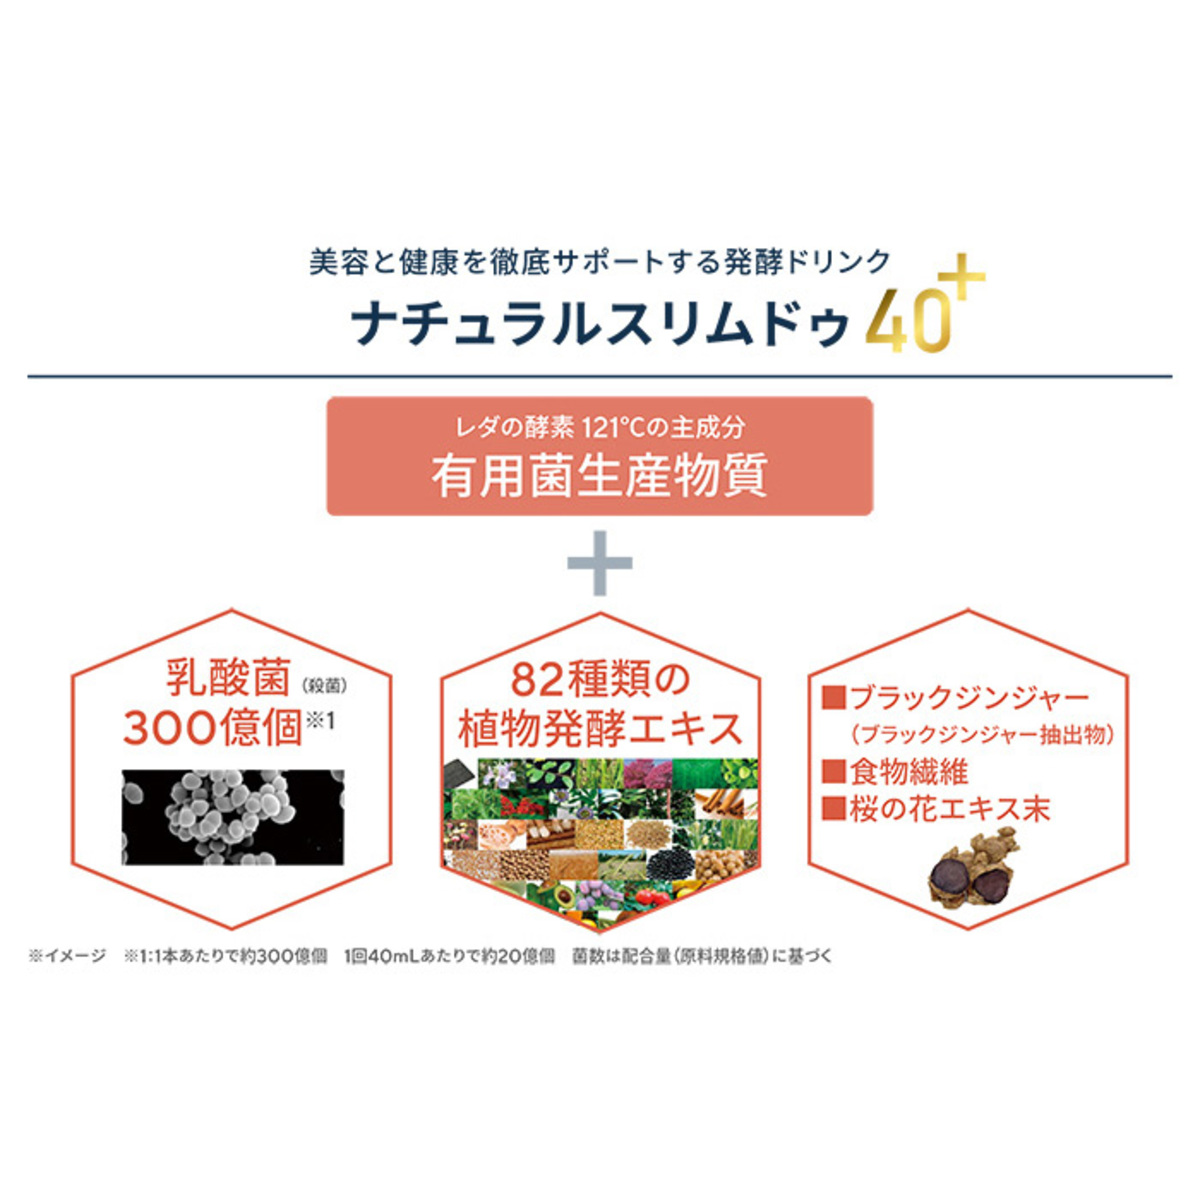 レダのナチュラルスリムドゥ 40+ 2本セット - QVC.jp